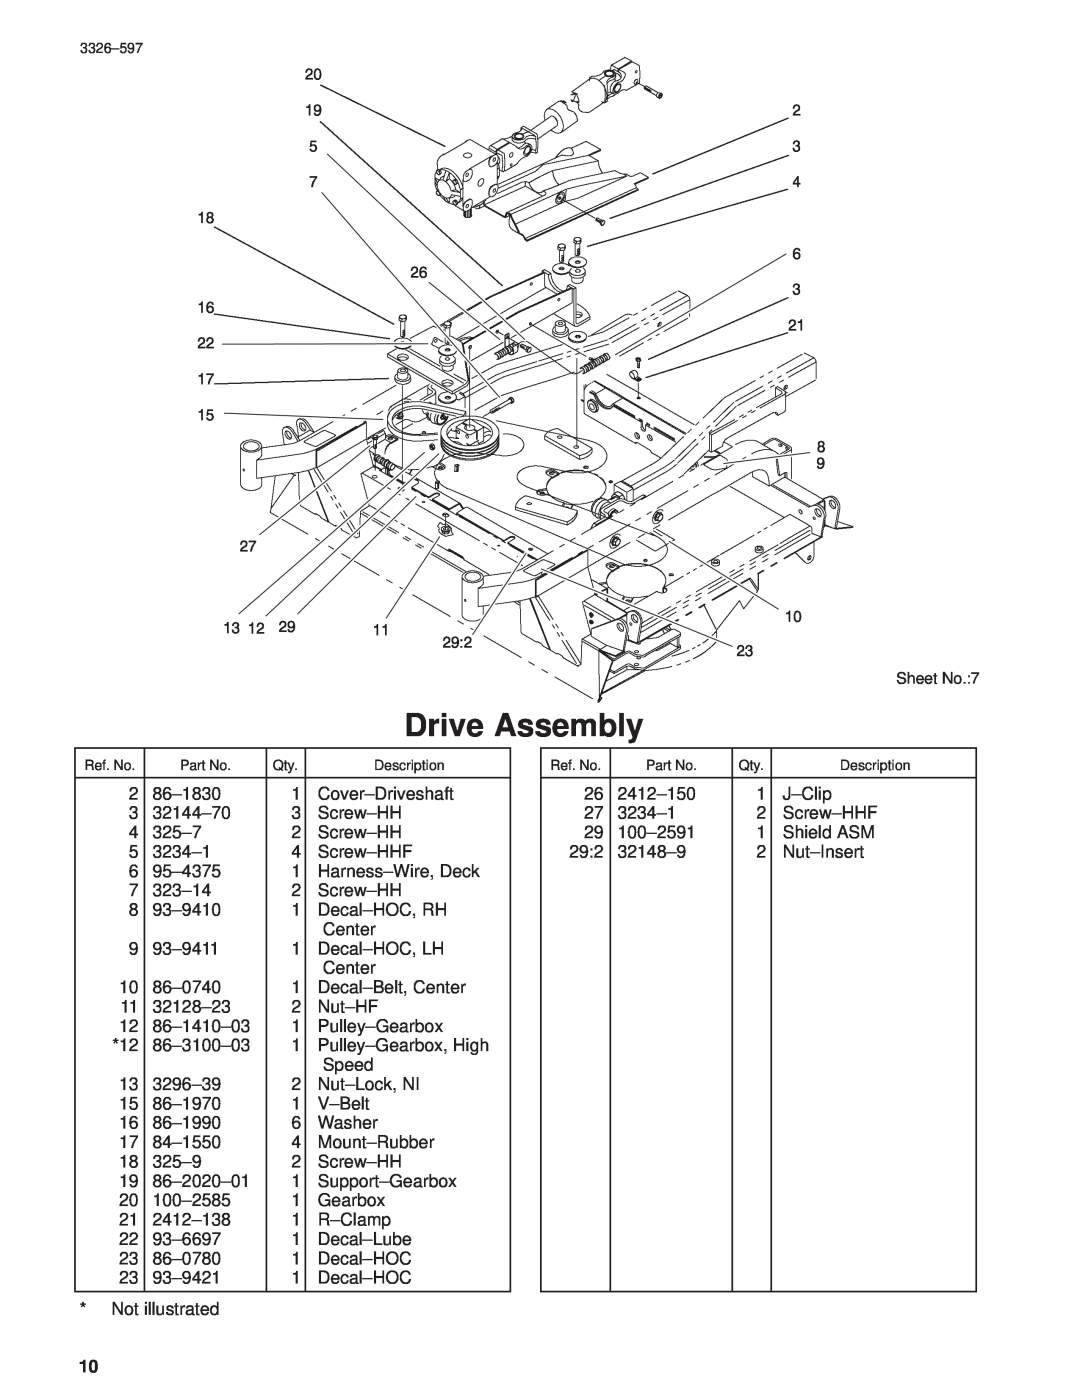 Toro 30402210000001 and Up manual Drive Assembly, Sheet No.7 